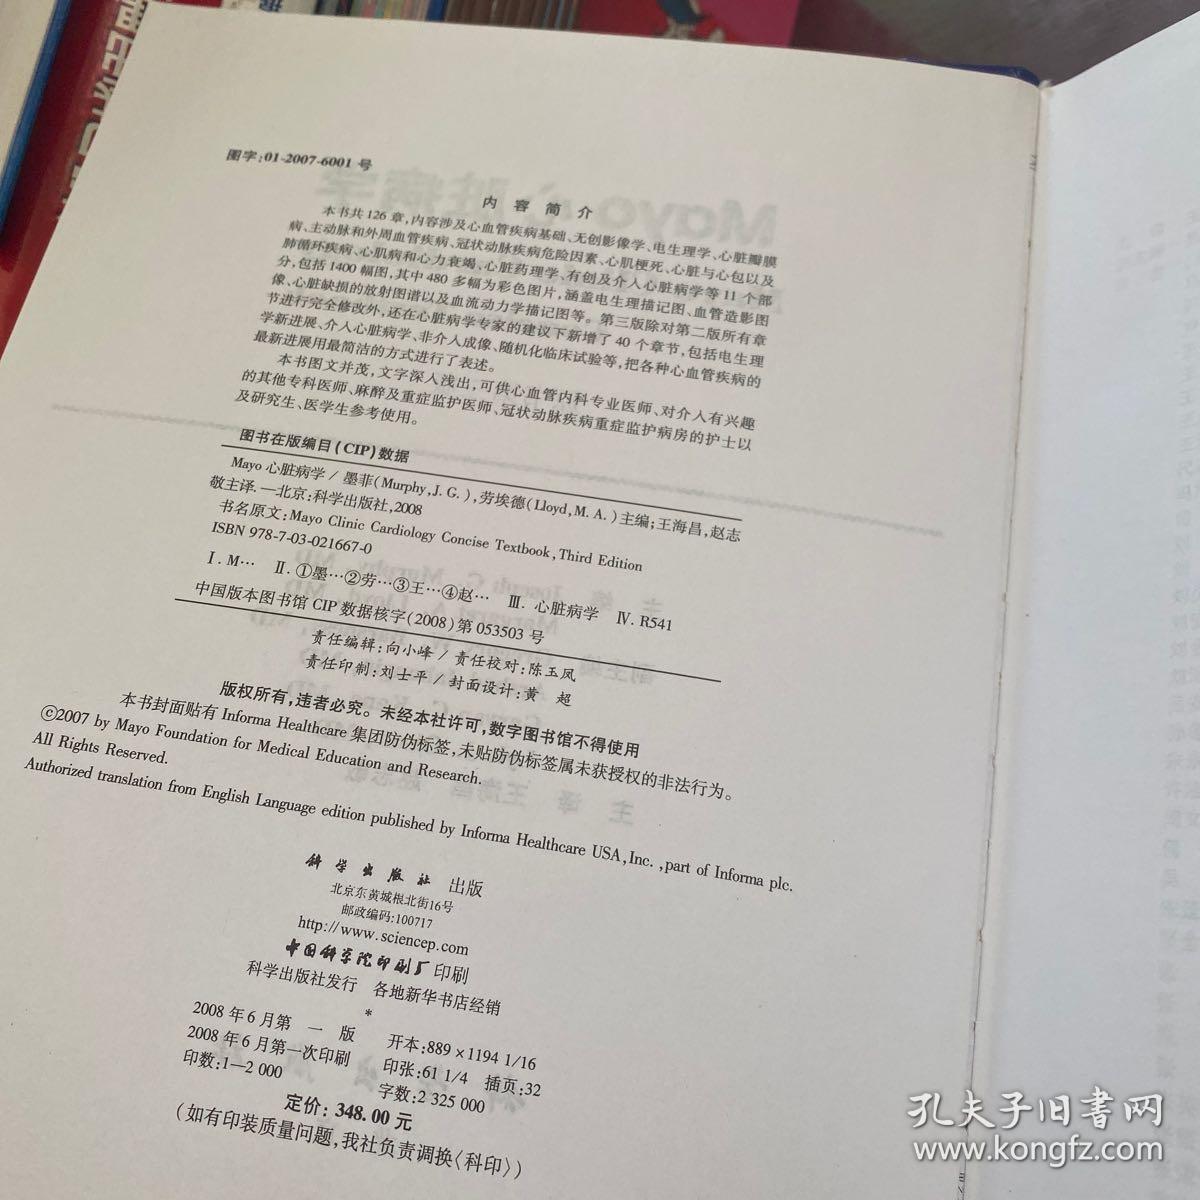 Mayo 心脏病学 第三版 中文翻译版